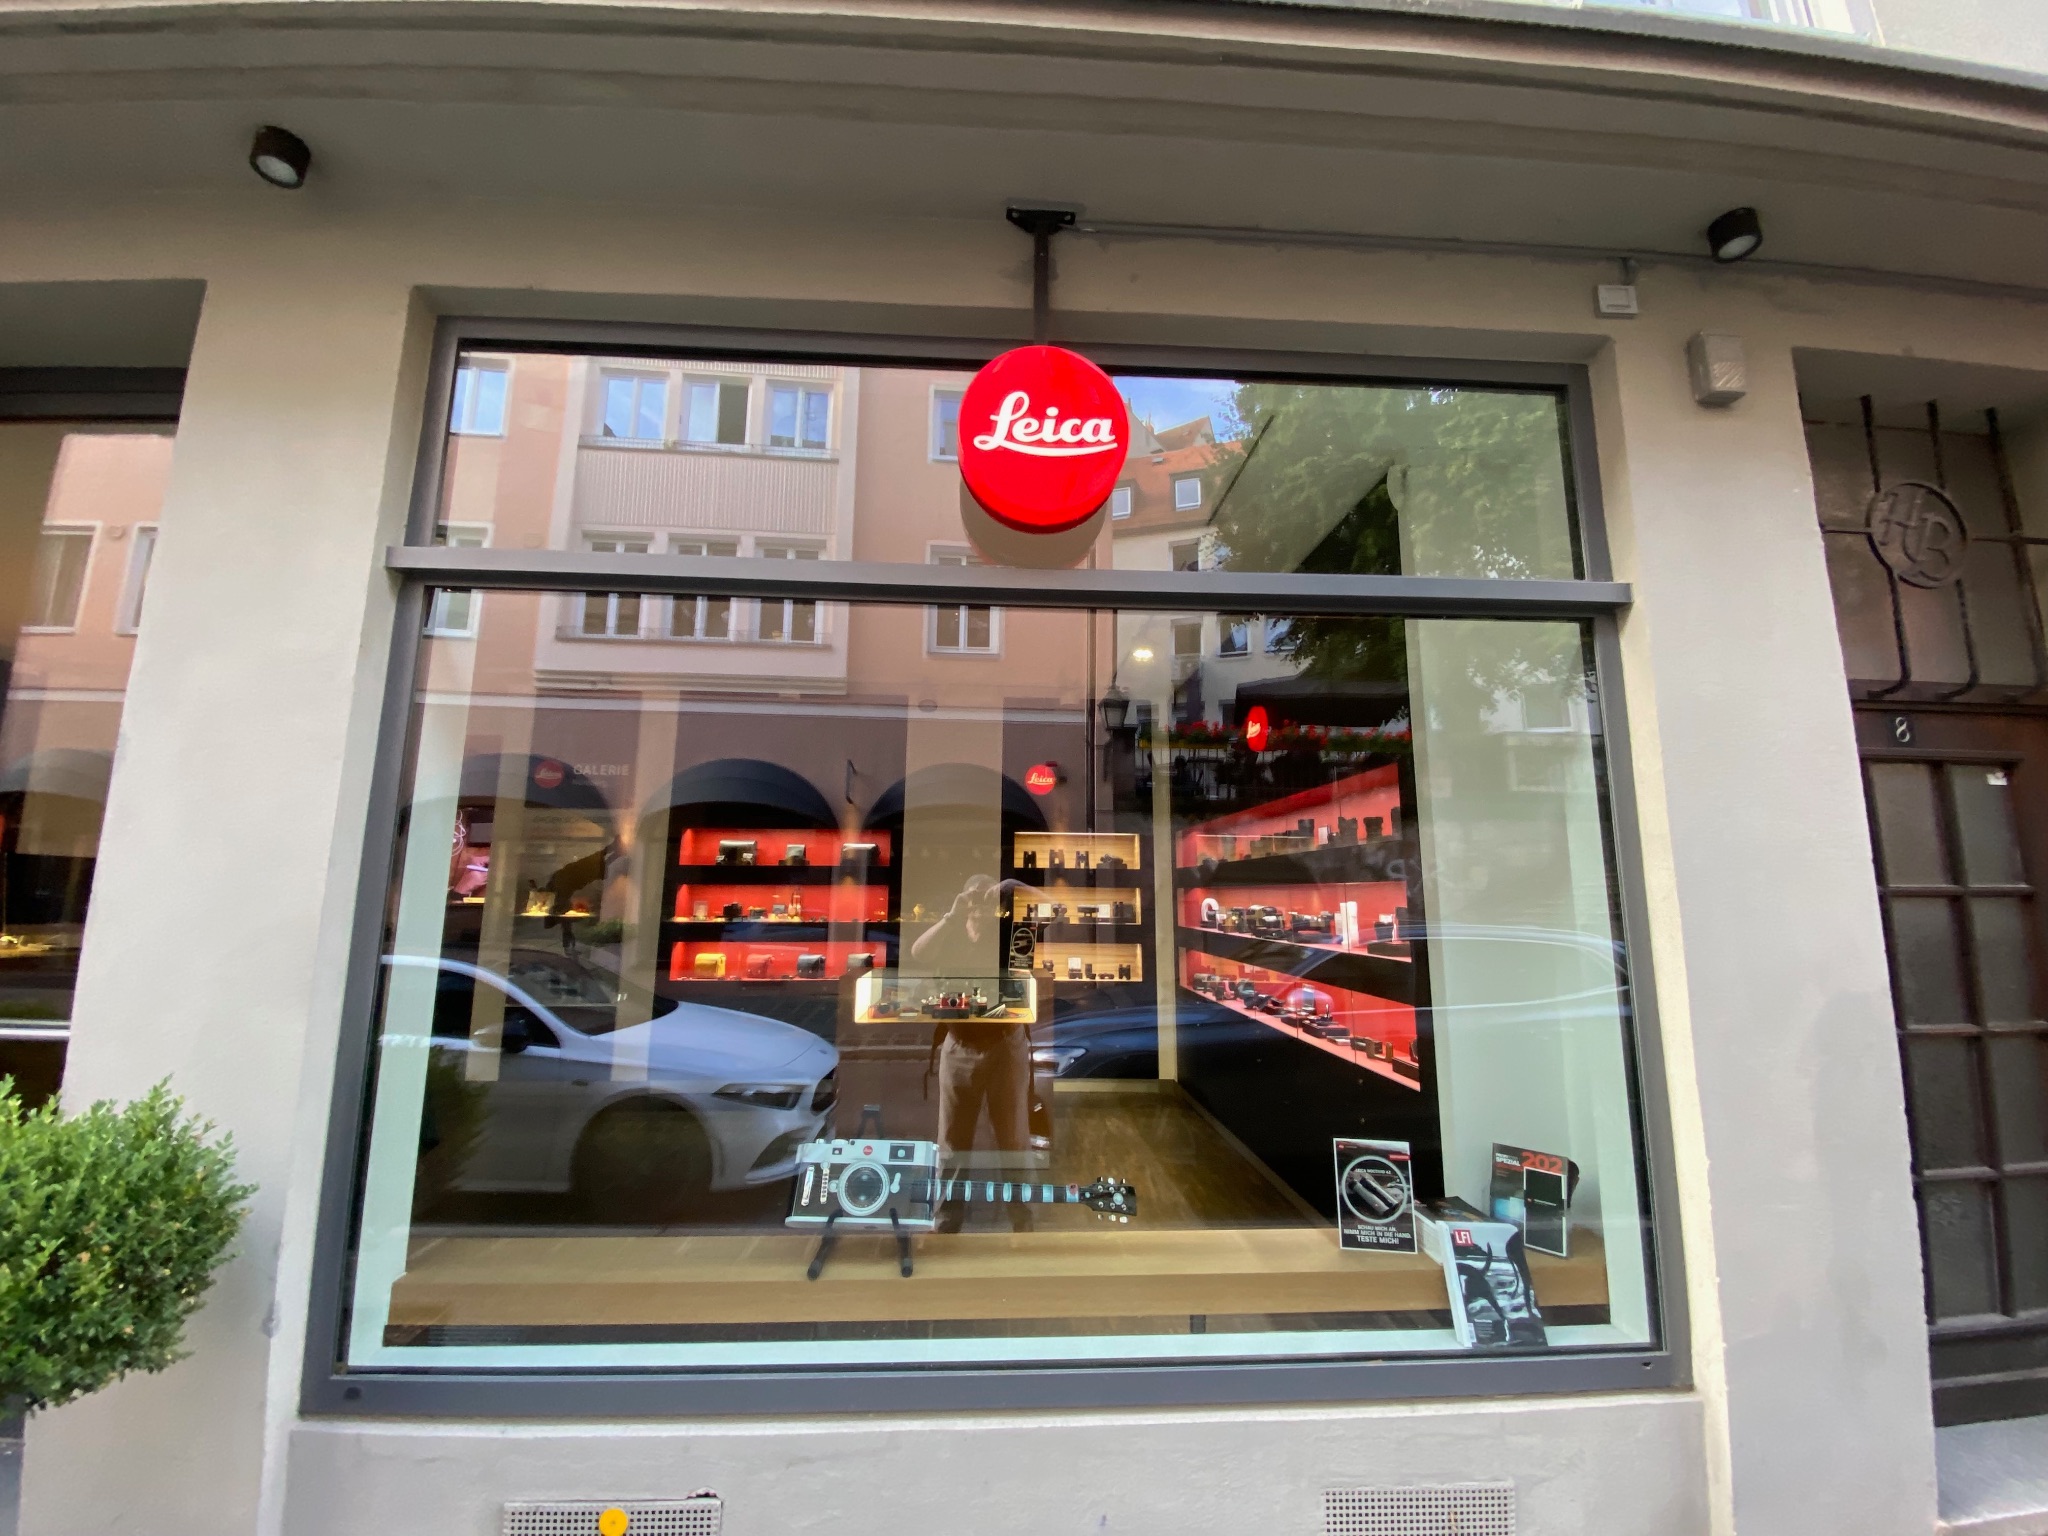 Leica camera store in Nuremberg, Germany 